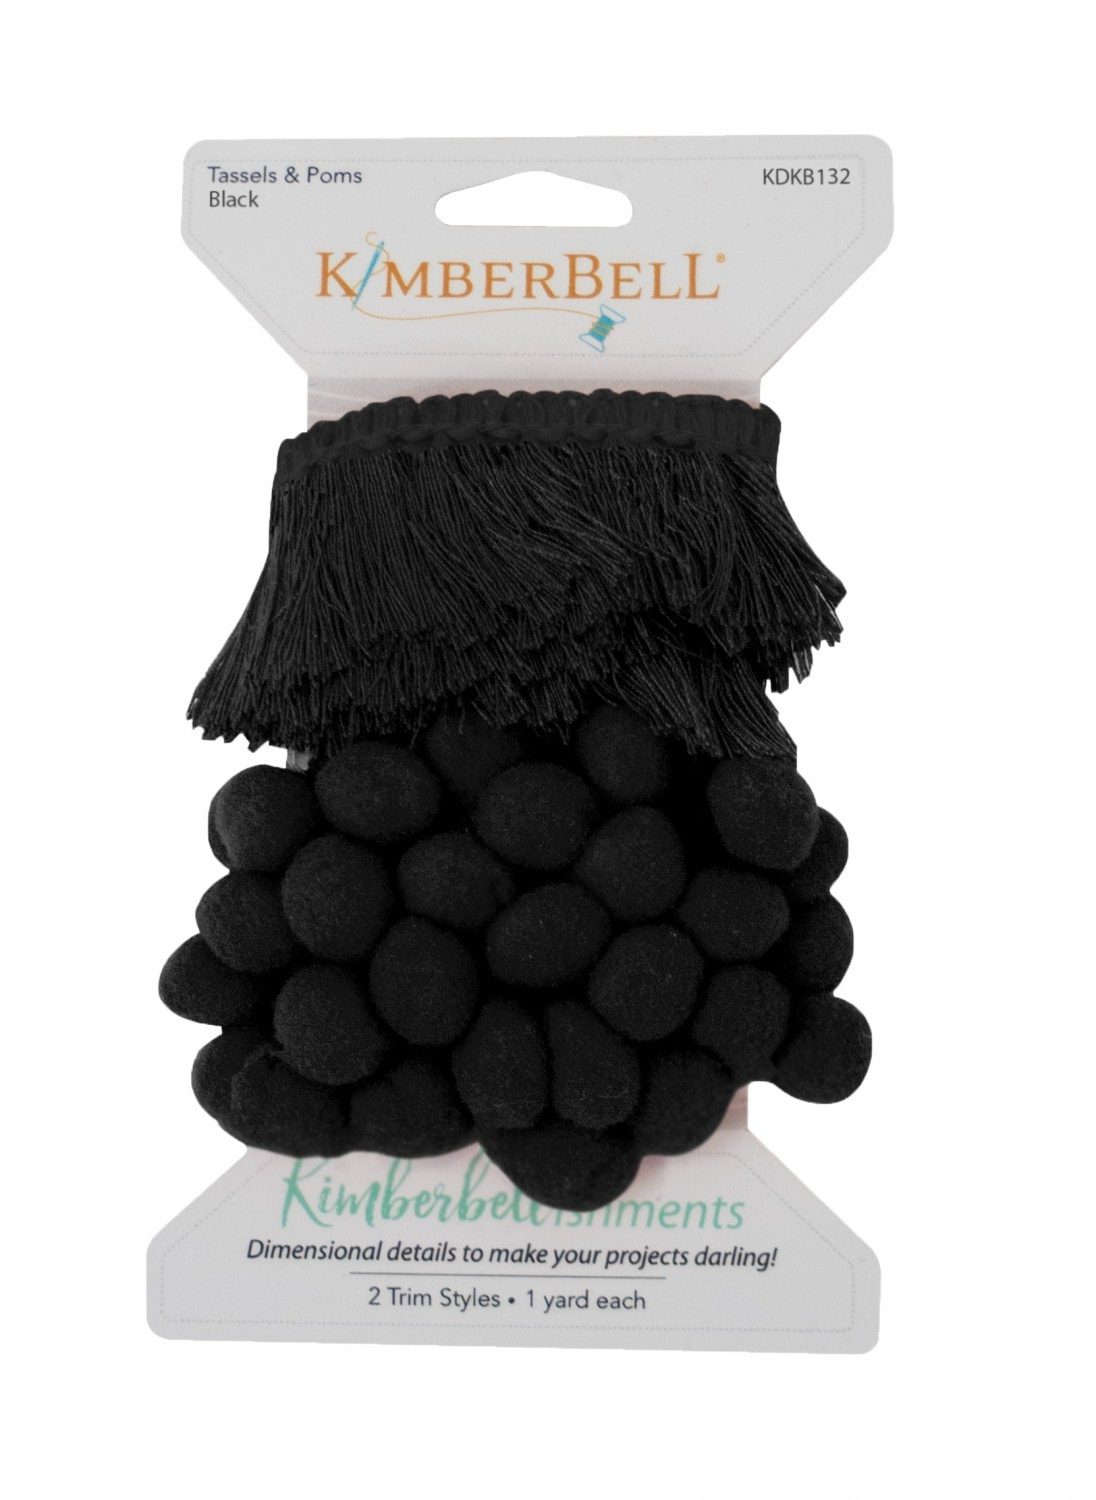 Kimberbell - Tassels & Poms Black